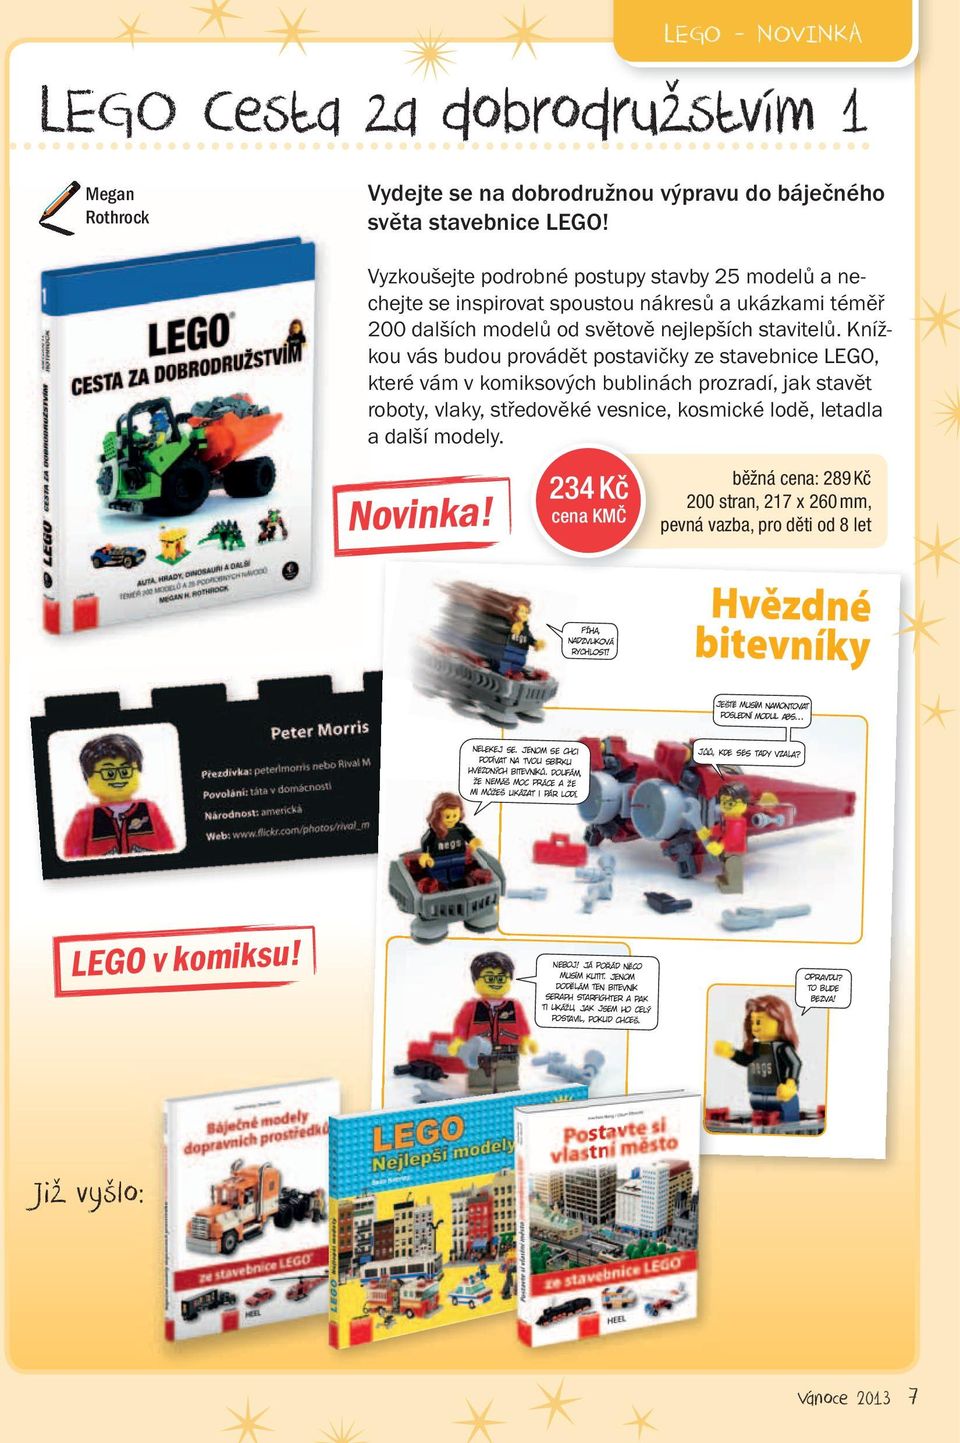 Knížkou vás budou provádět postavičky ze stavebnice LEGO, které vám v komiksových bublinách prozradí, jak stavět roboty, vlaky, středověké vesnice, kosmické lodě, letadla a další modely. Novinka!